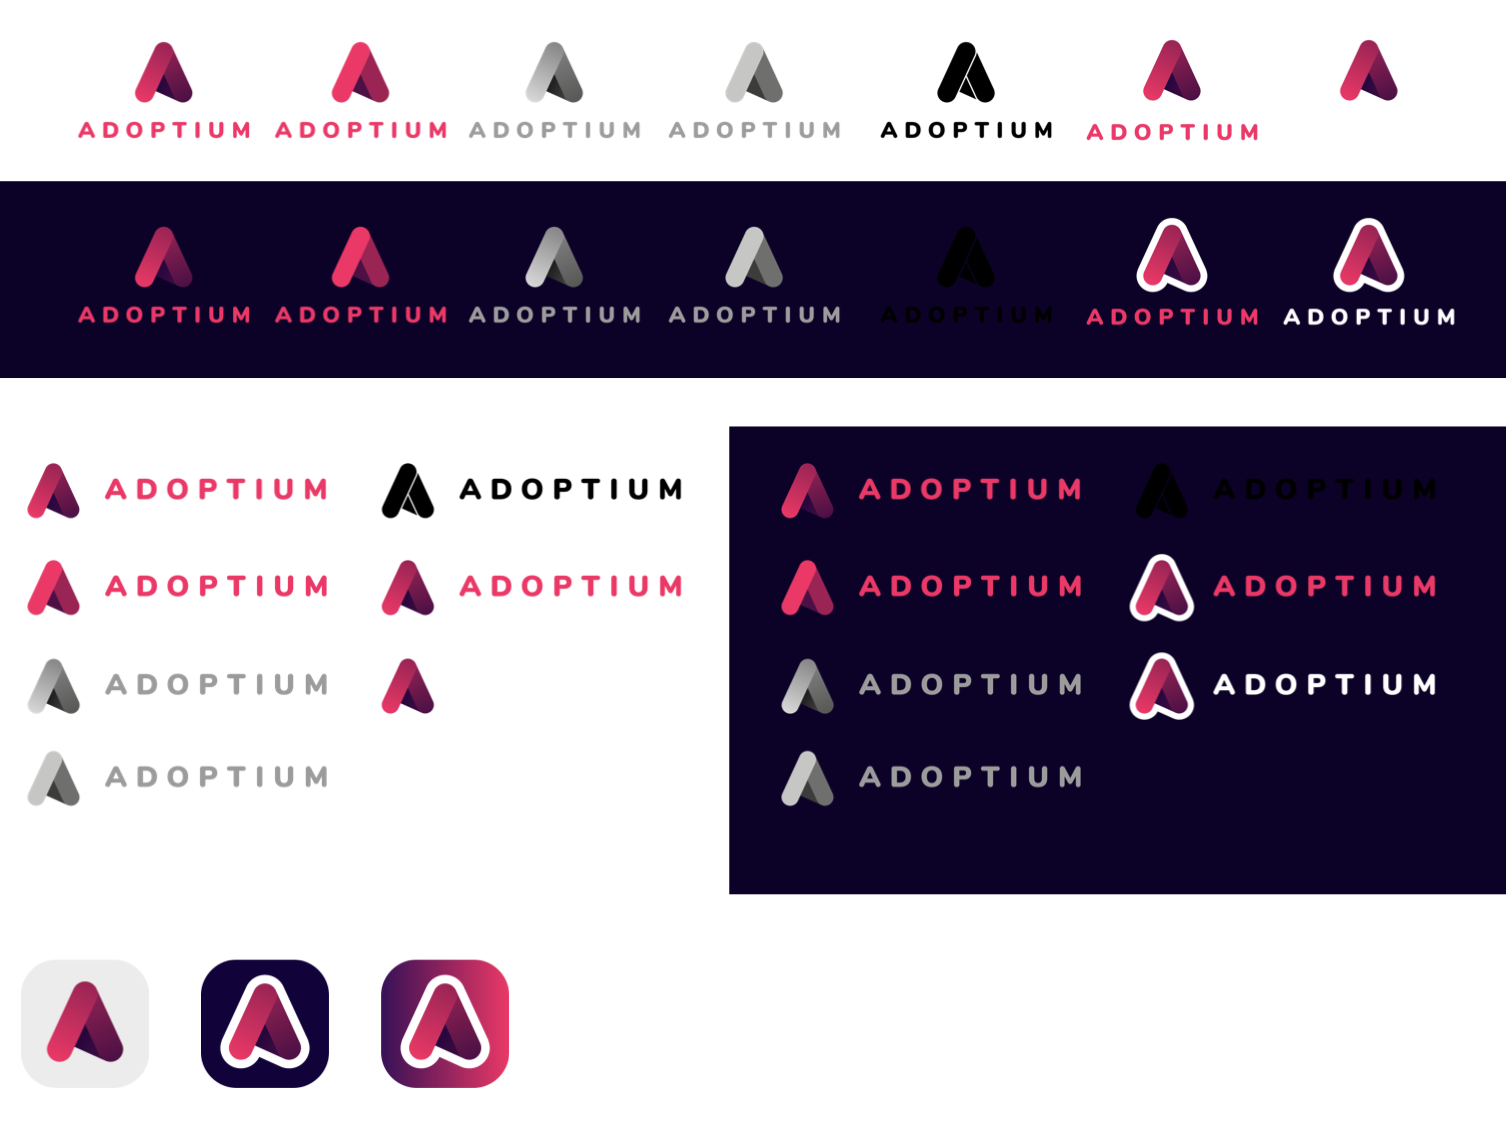 Adoptium logo color variants